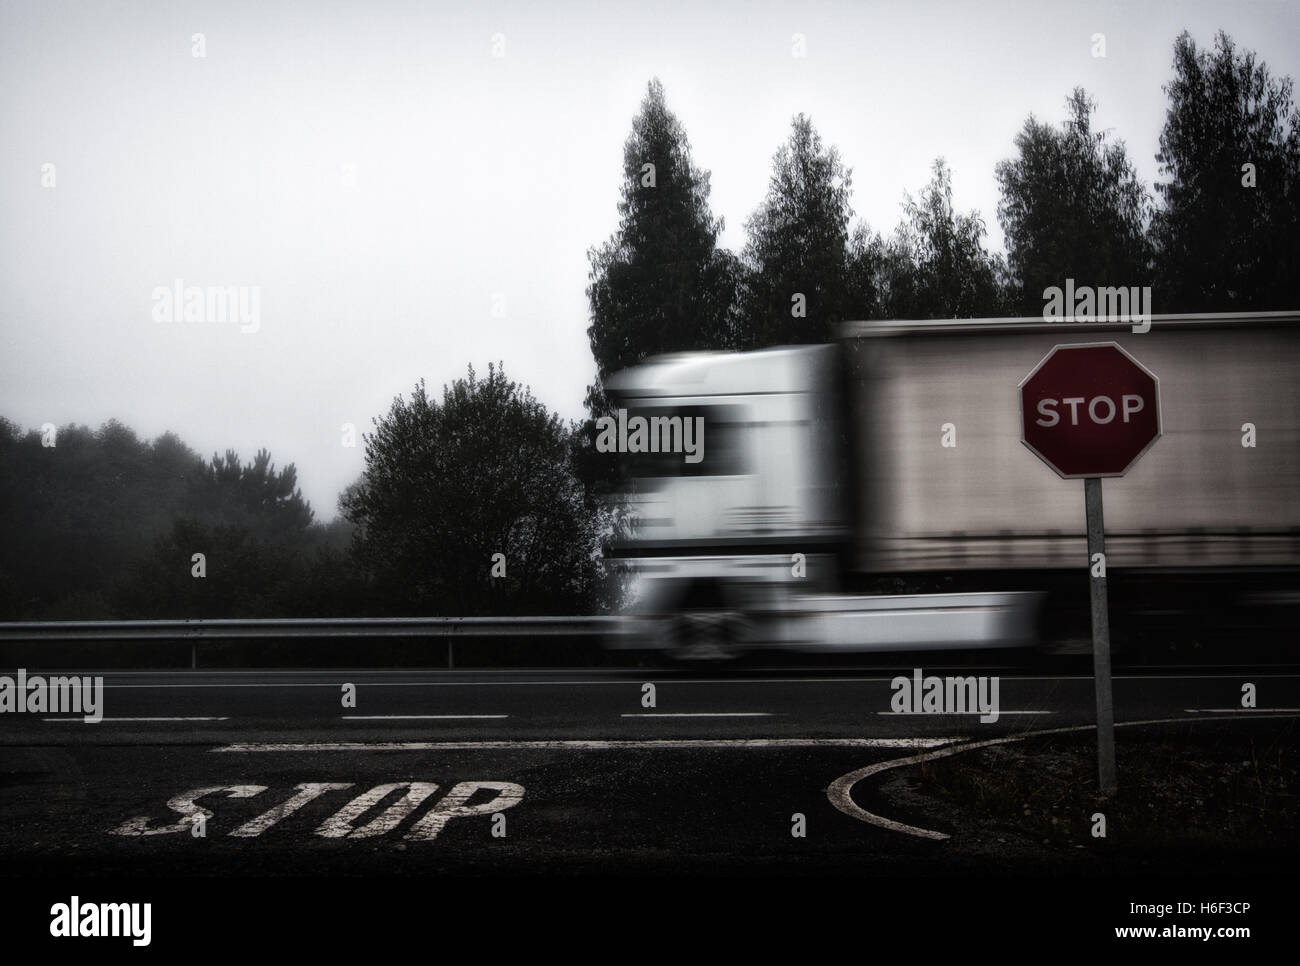 Foto von LKW, die Beschleunigung auf Straße, Stop-Schild und Stop Buchstaben gemalt in den Boden Stockfoto